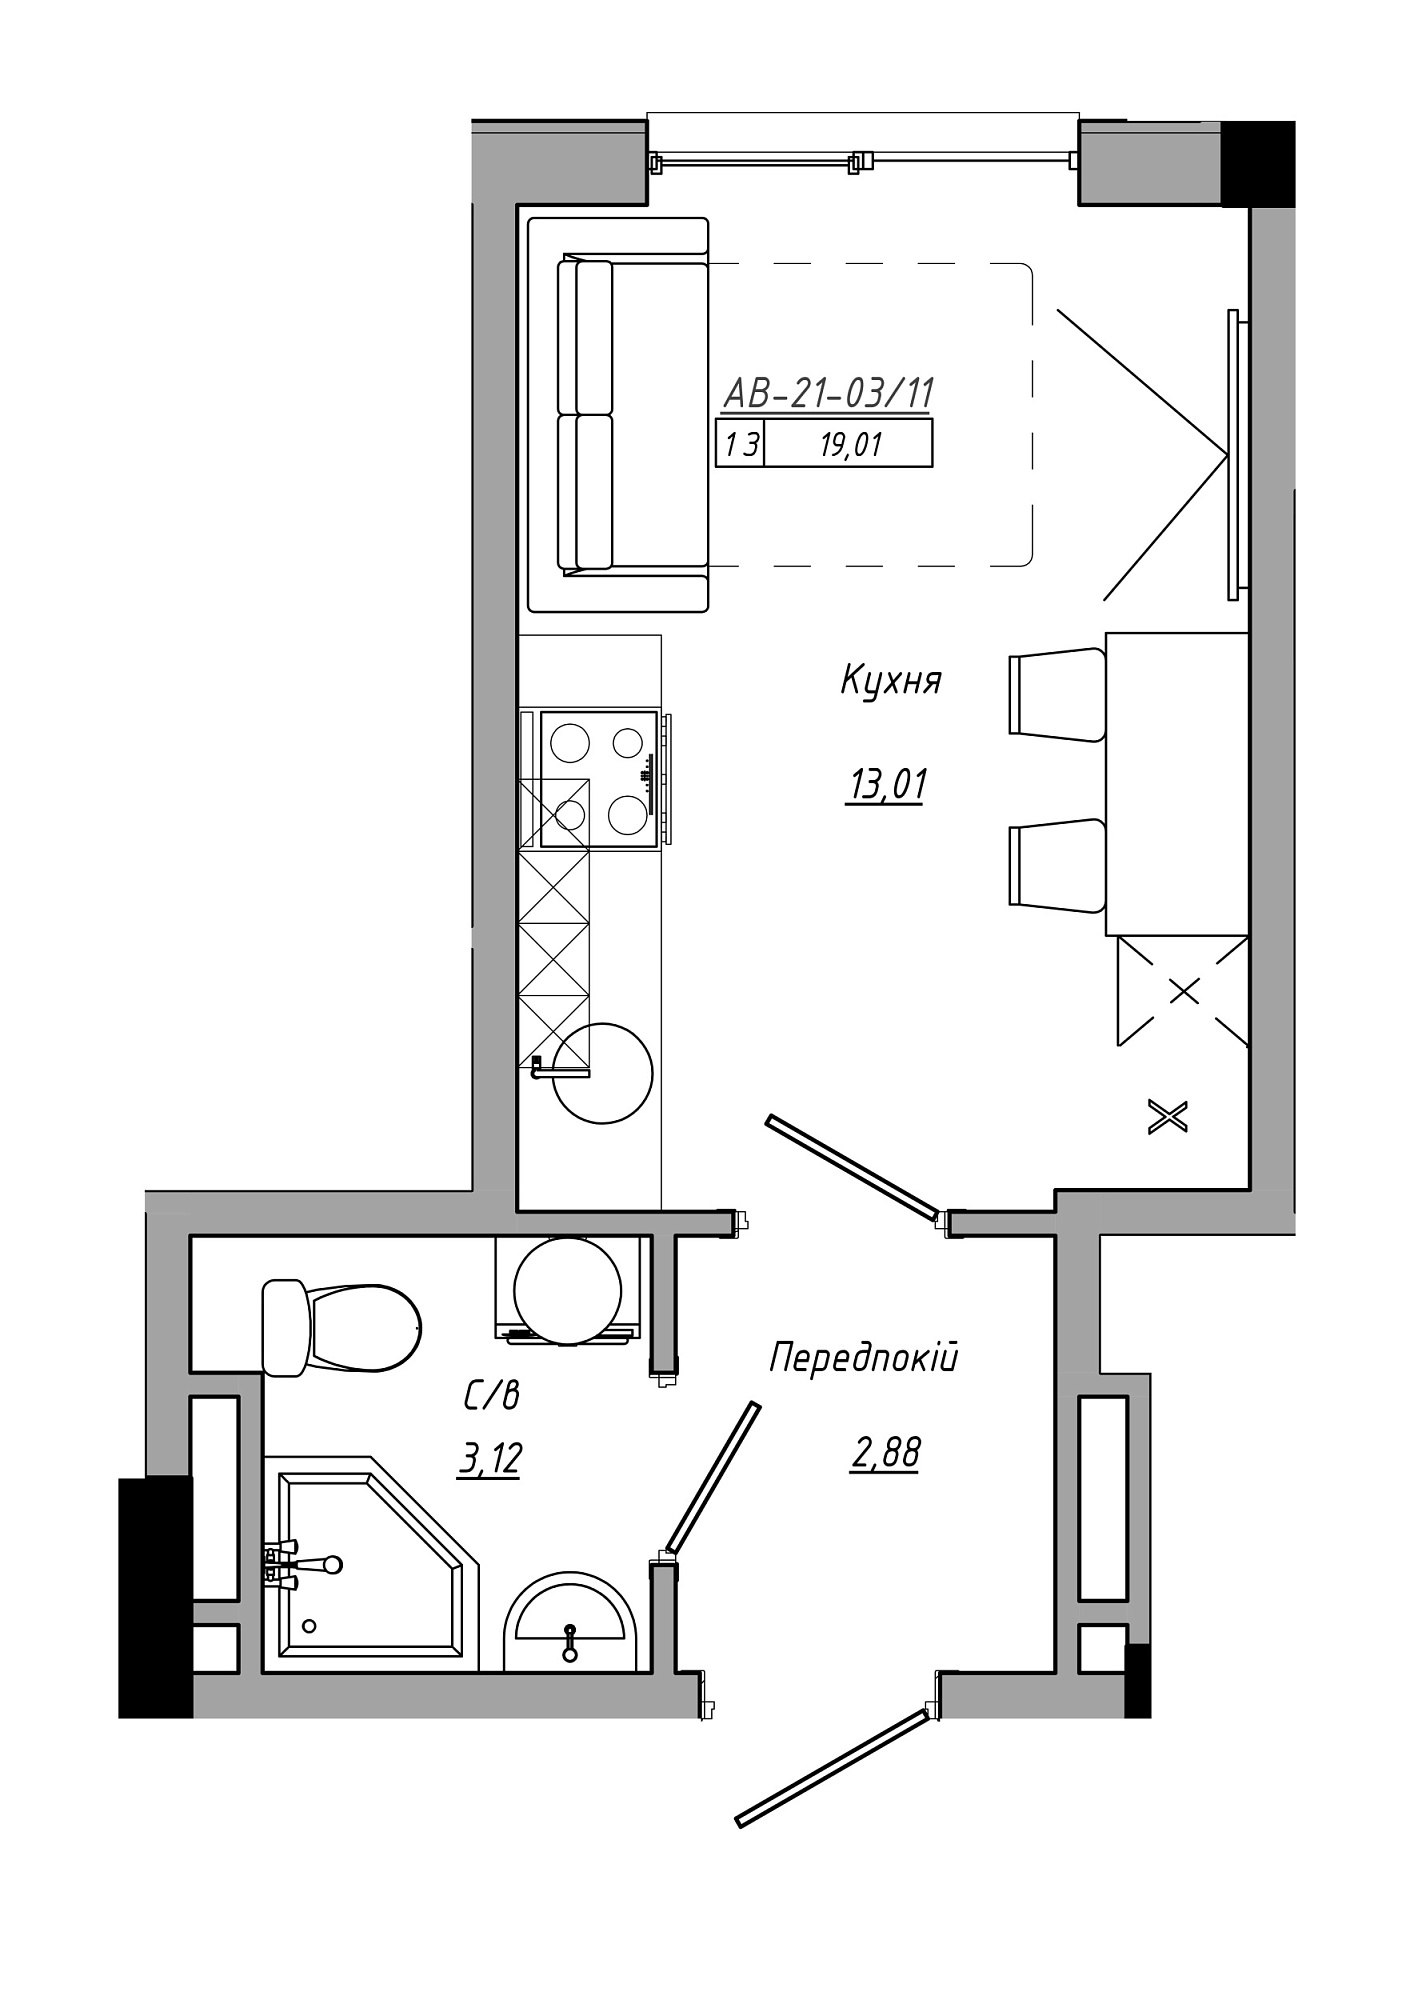 Планування Smart-квартира площею 19.01м2, AB-21-03/00011.